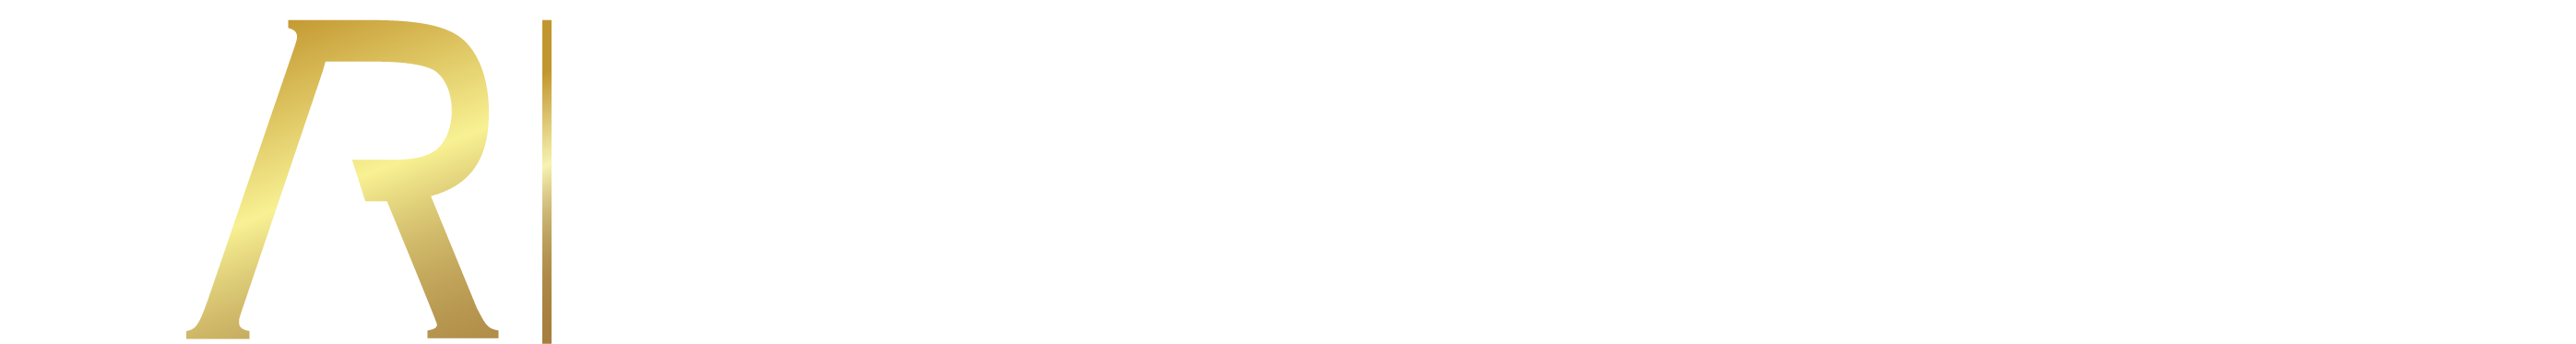 לוגו מוניר רמאל